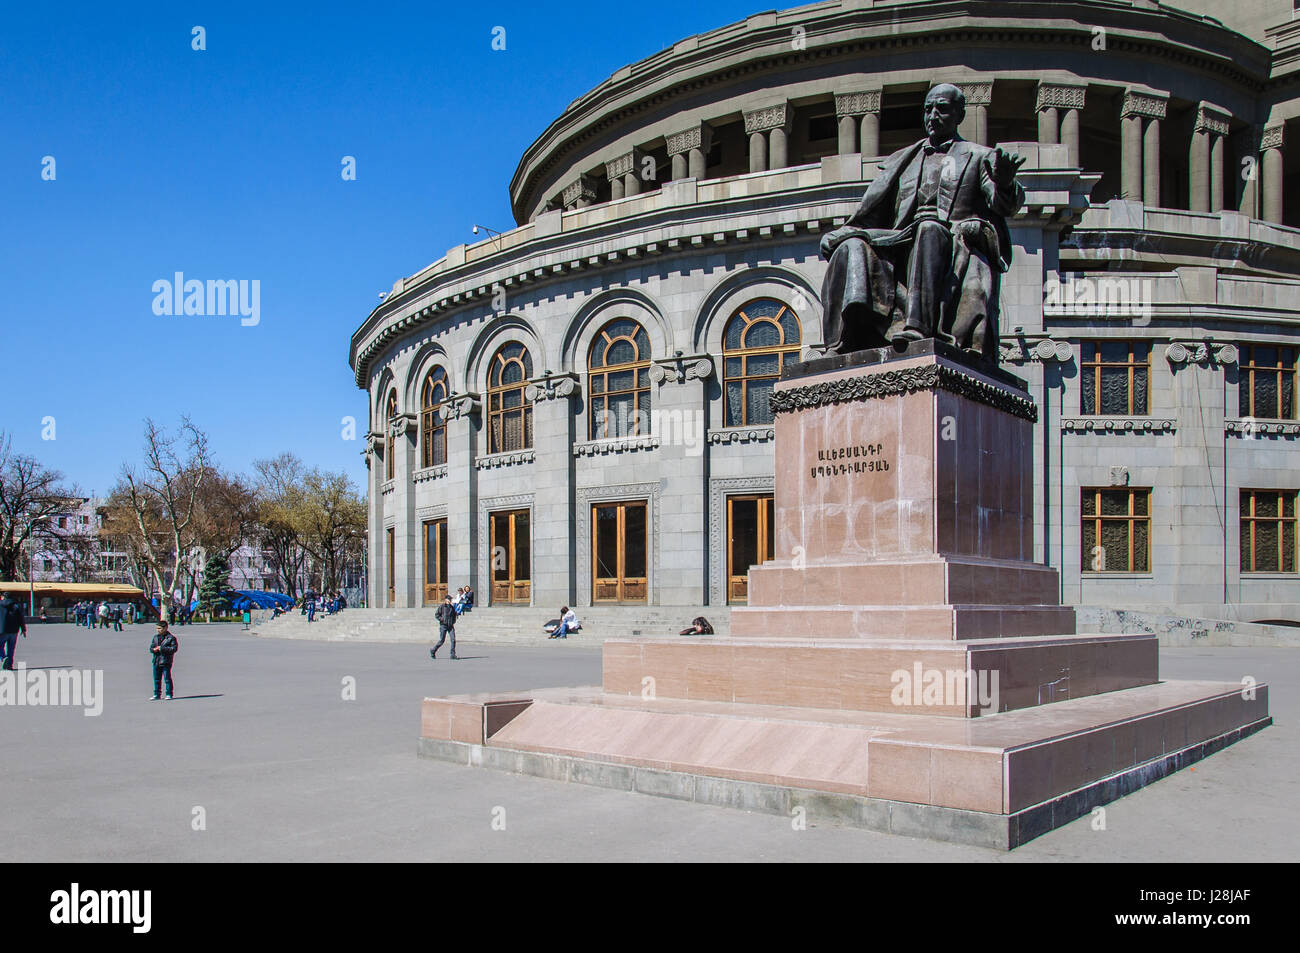 Armenia, Yerevan, Kentron, the opera house of architect Alexander Tamanjan Stock Photo